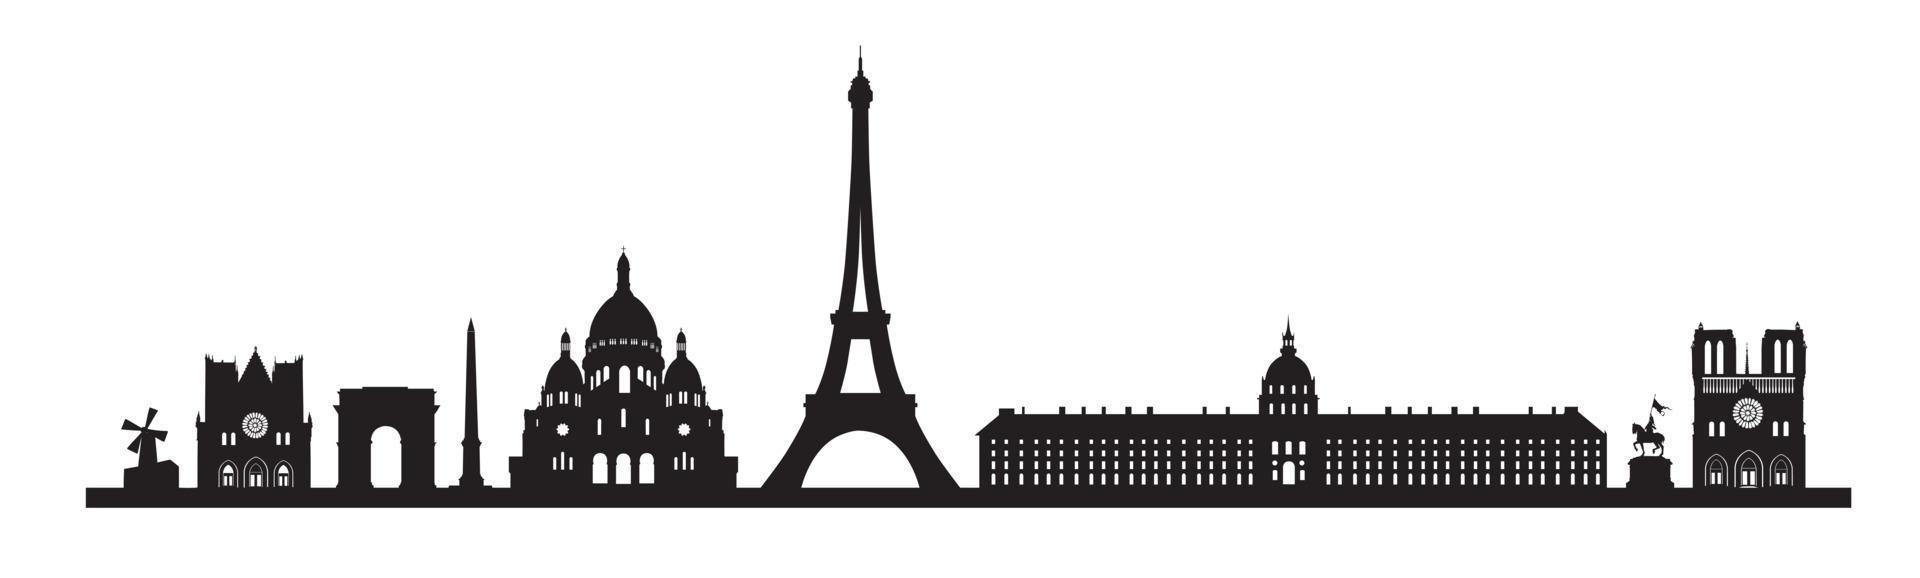 fundo do horizonte de paris. conjunto de ícones do famoso marco de paris. frança, paris viagens paisagem urbana negra vetor